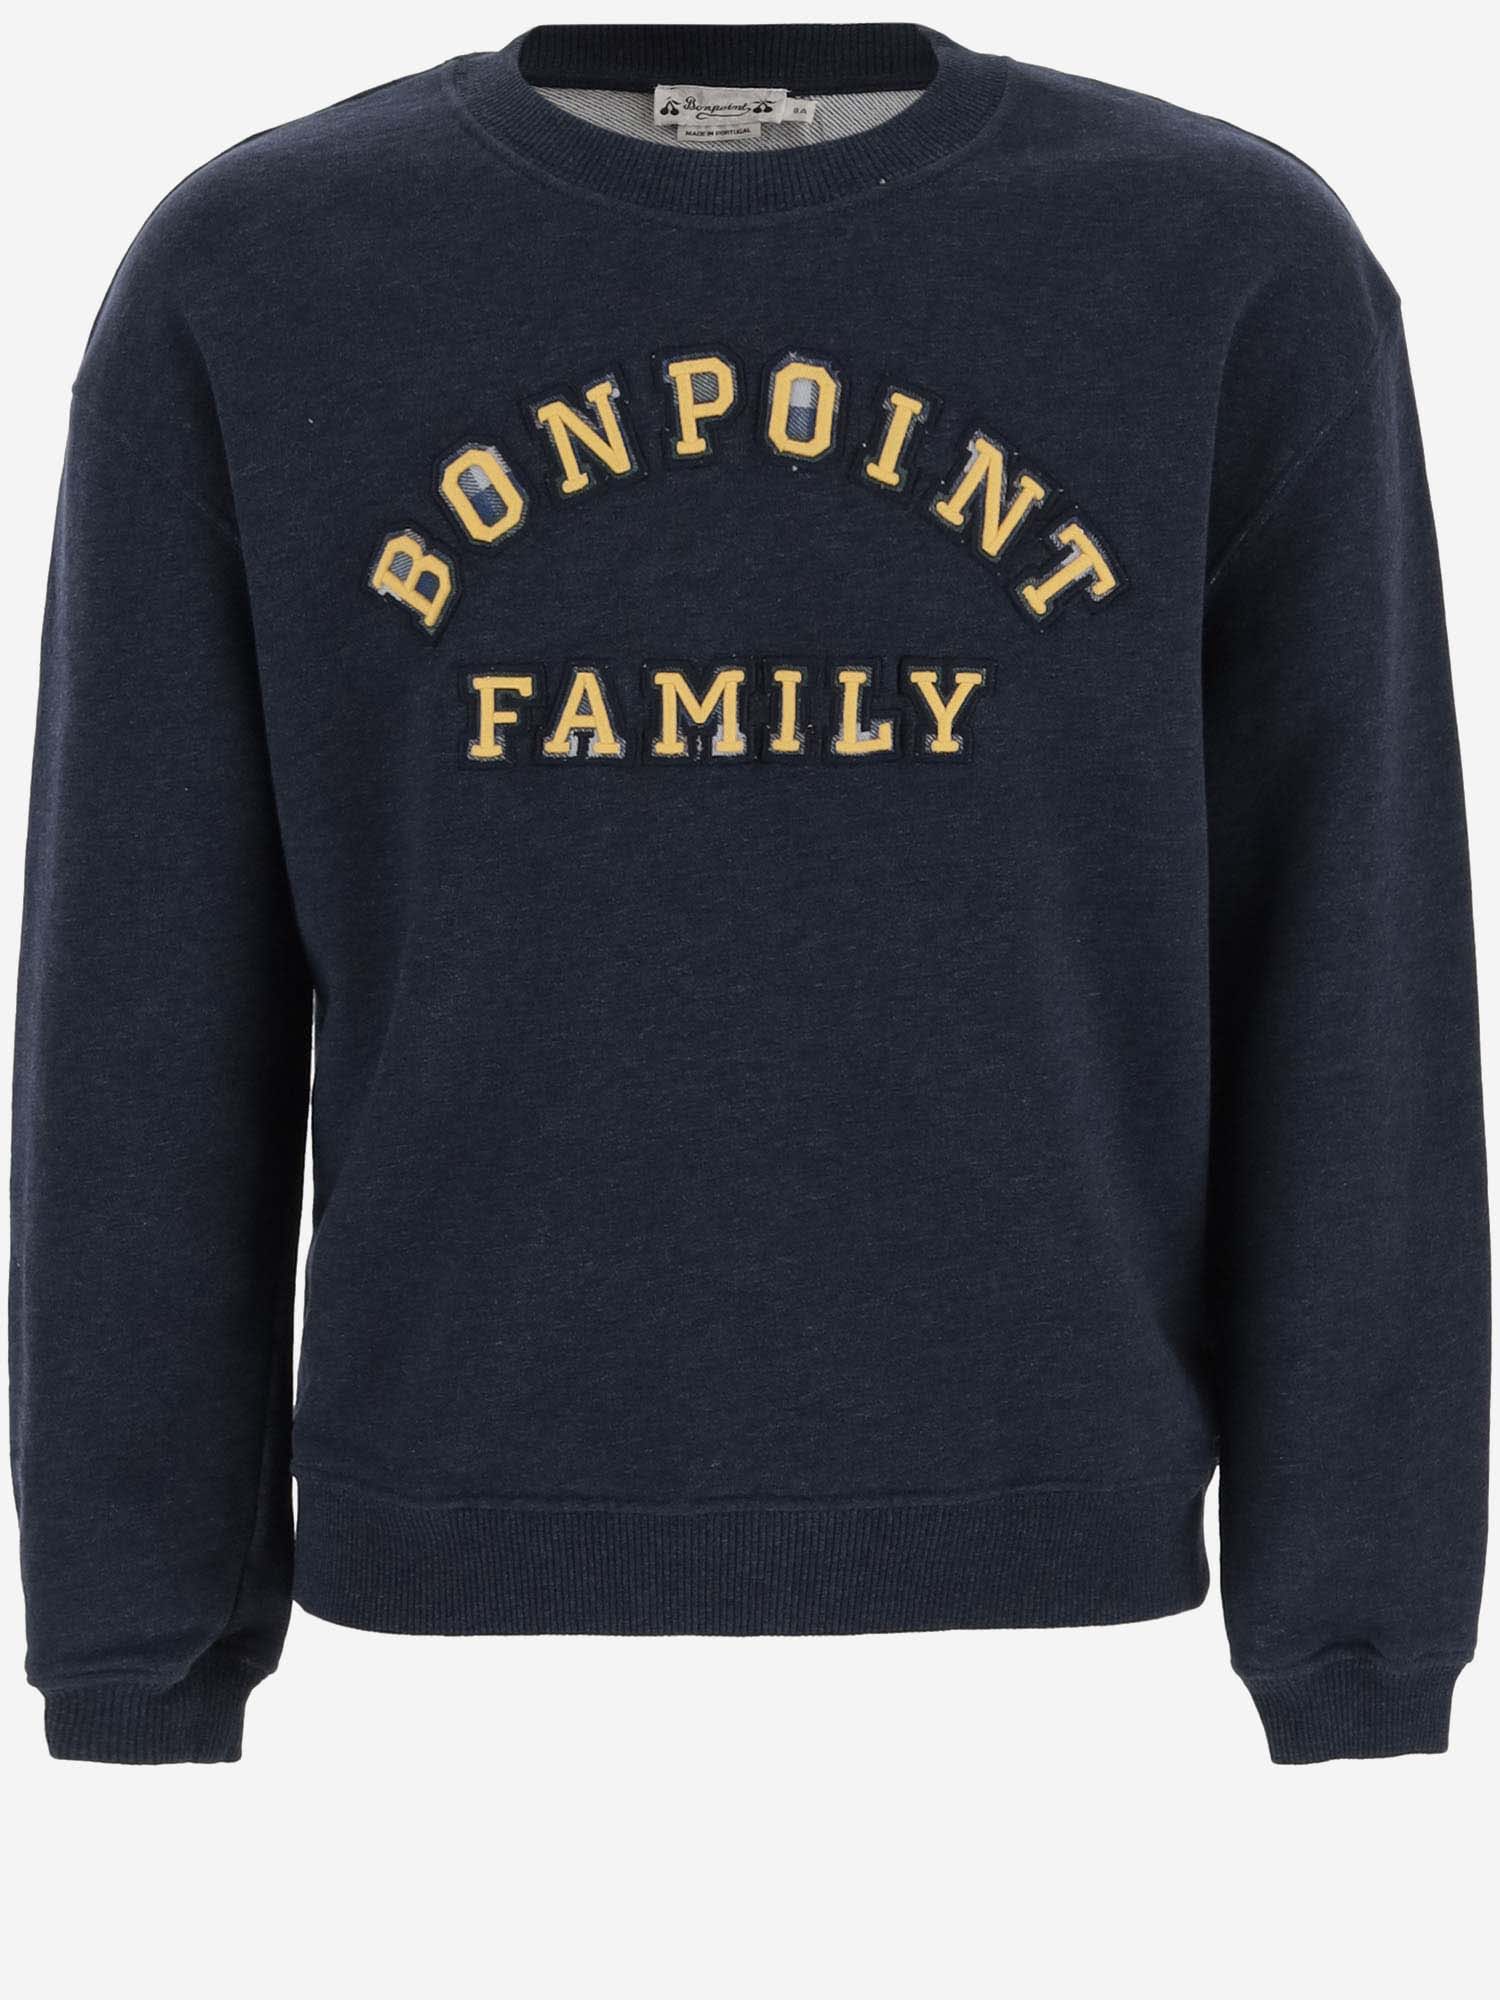 Bonpoint Kids' Cotton Sweatshirt With Logo In Blue